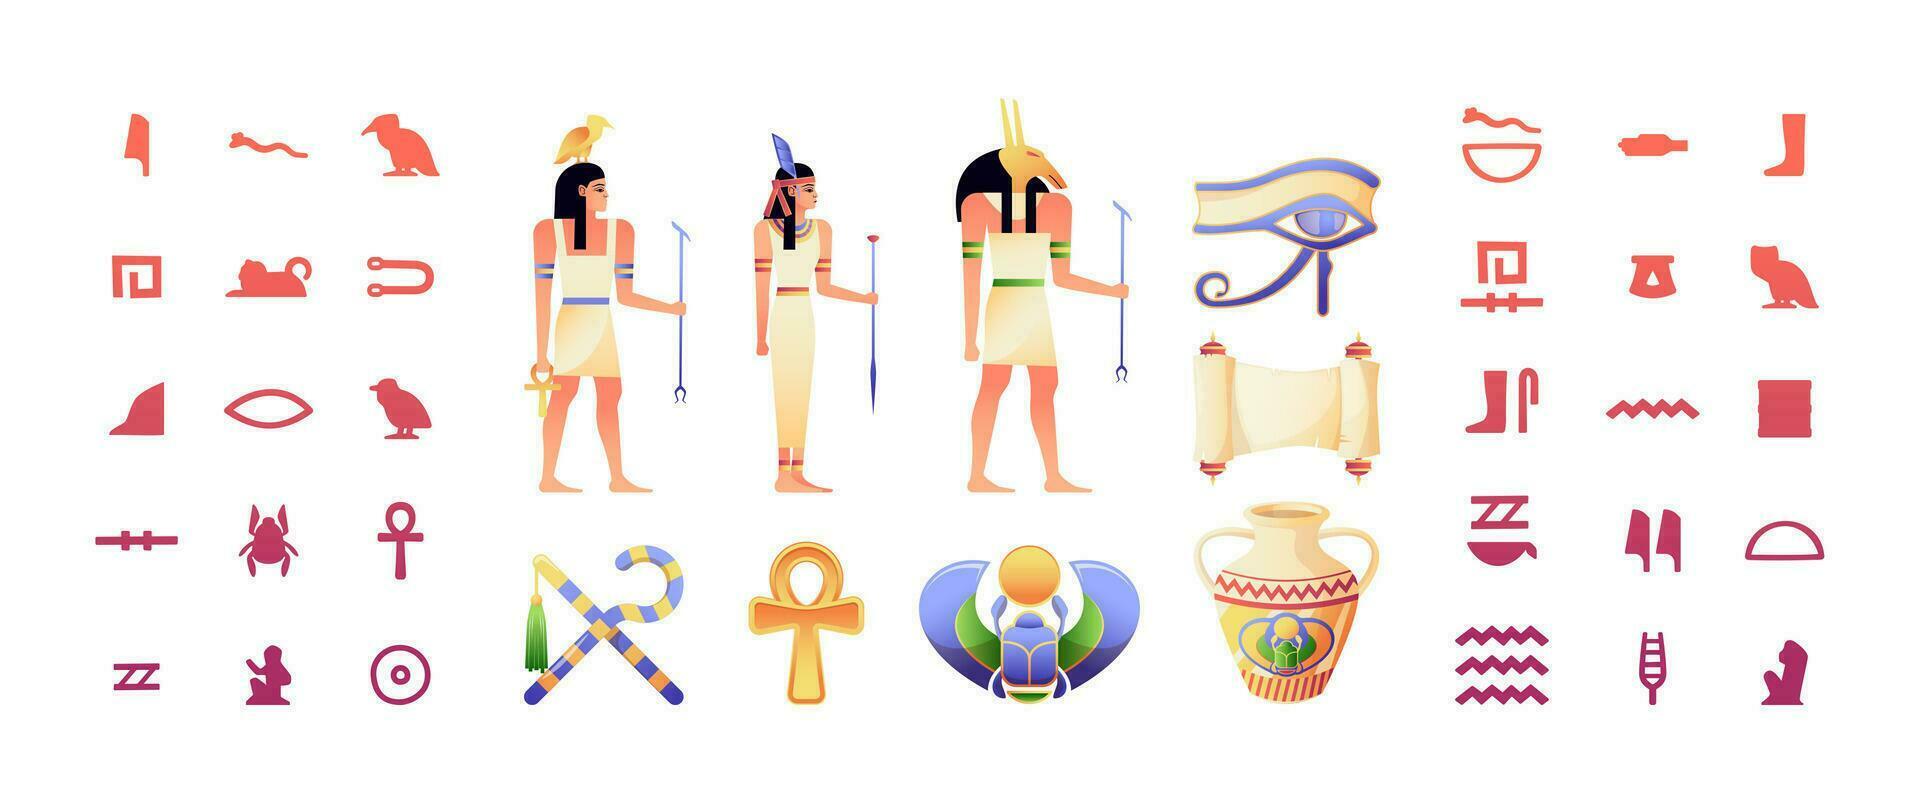 egiziano elementi. antico Egitto geroglifico e tradizionale personaggi Faraone Dio tempio sfinge, vecchio antico religione simboli. vettore collezione